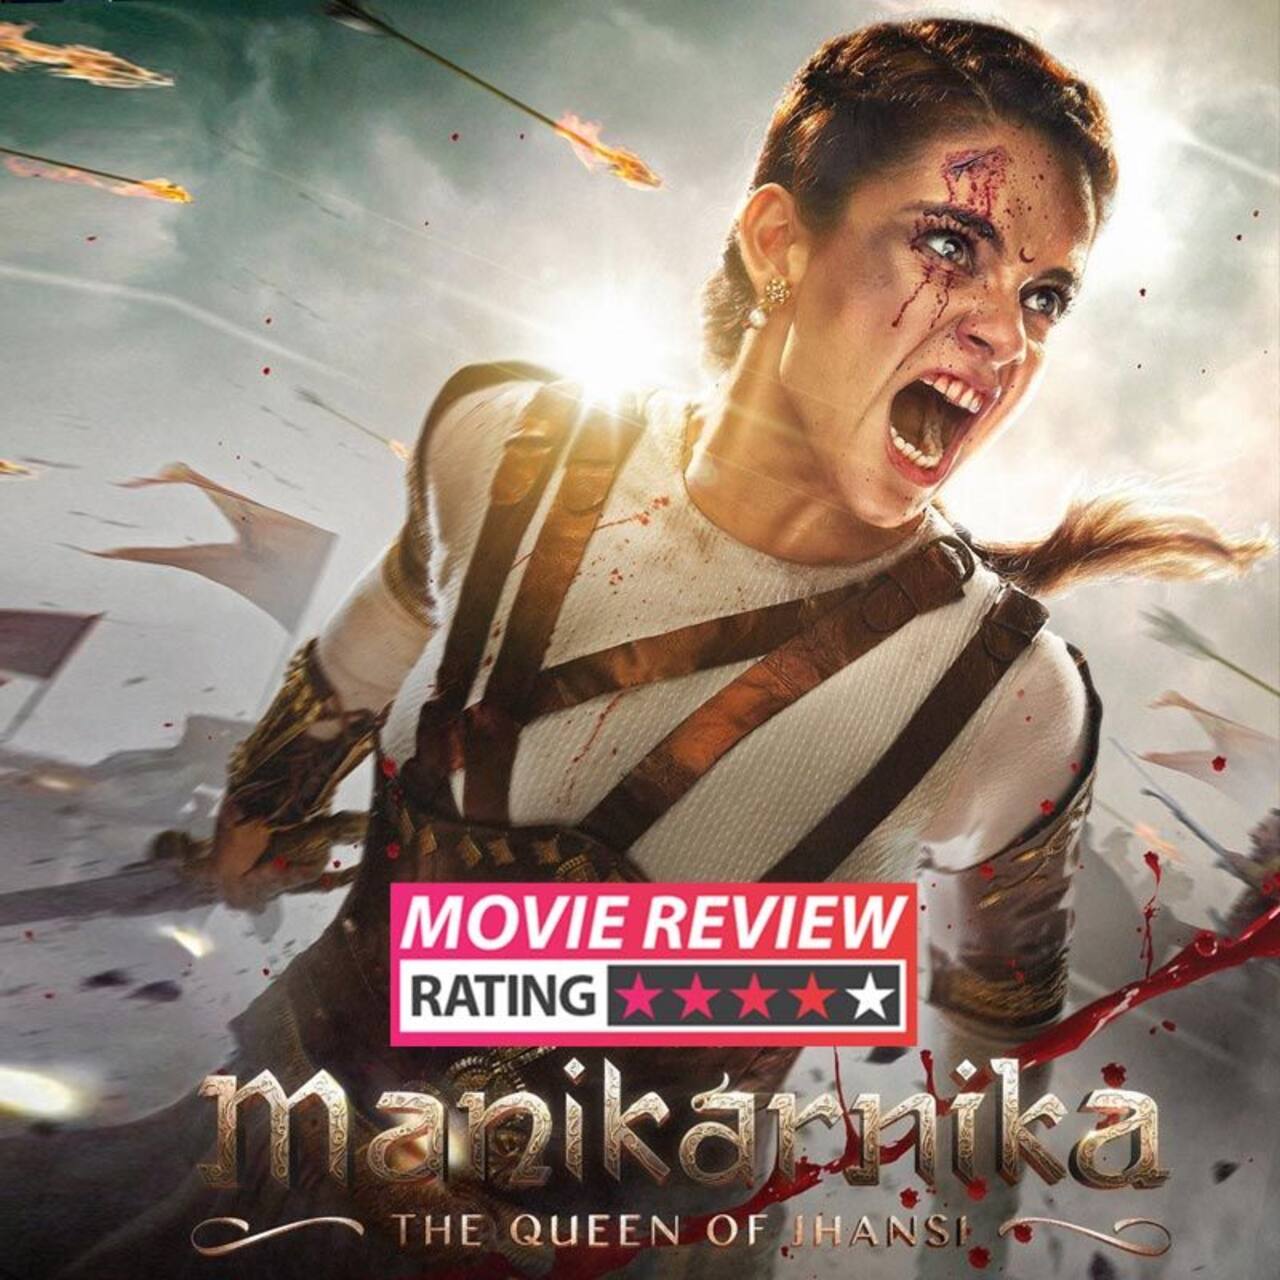 manikarnika movie review in english